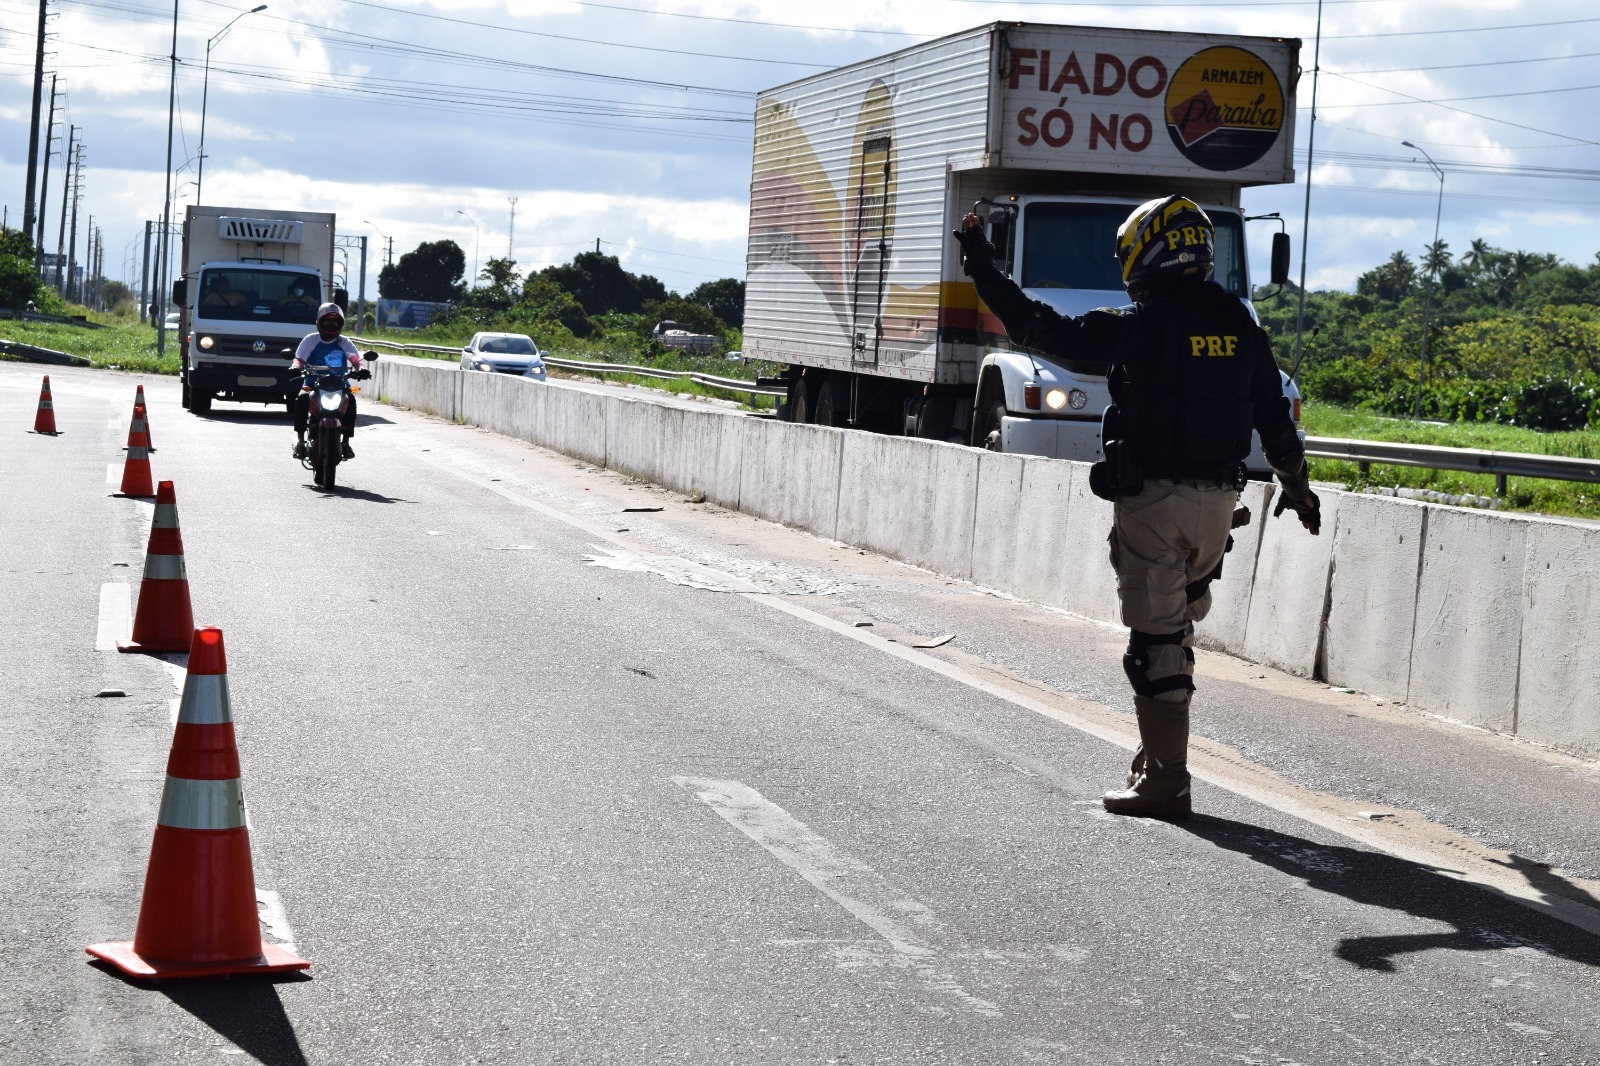 Carreta com sinal de rastreamento bloqueado é recuperada pela PM em Ribeira  do Pombal - Sertão em Pauta